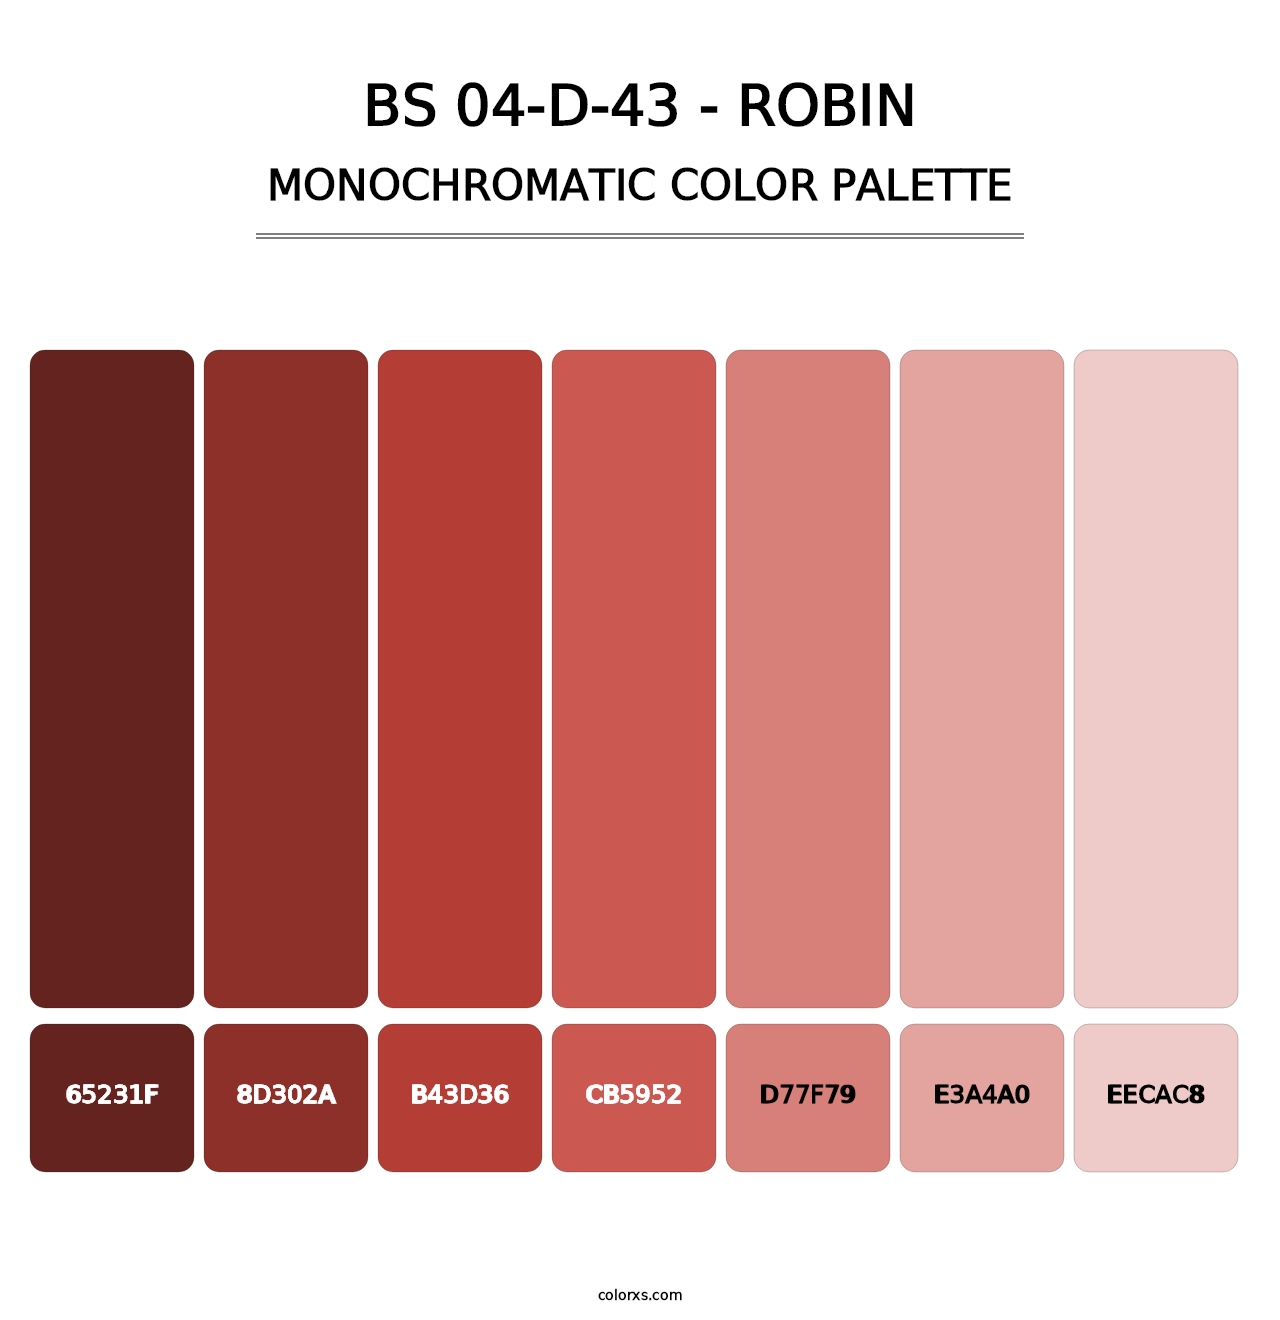 BS 04-D-43 - Robin - Monochromatic Color Palette